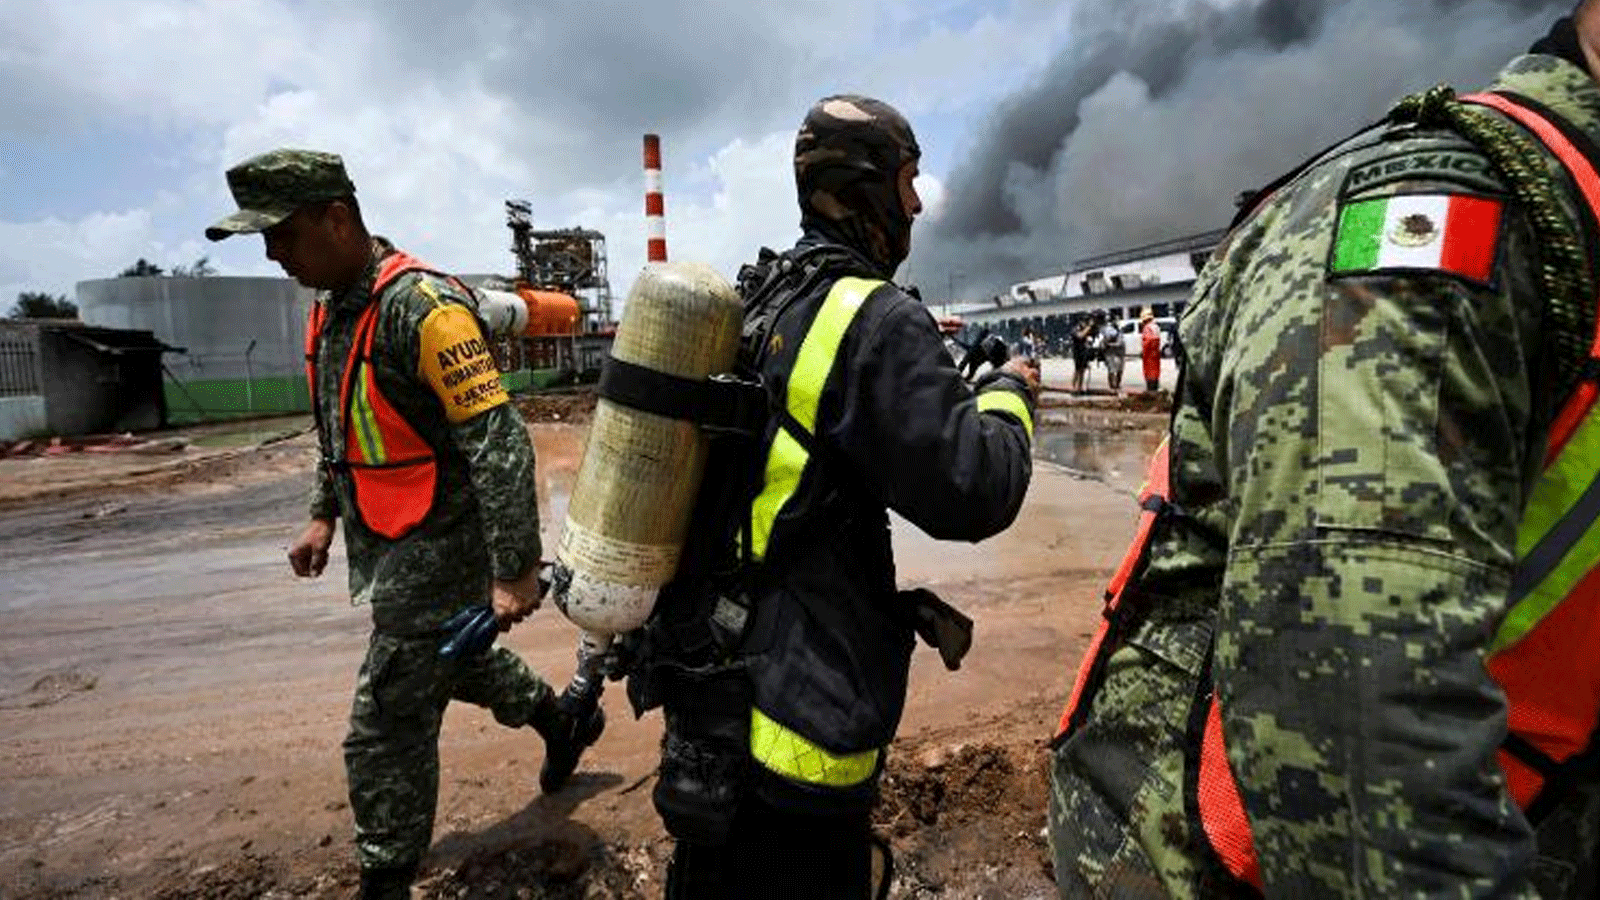 رجال إطفاء مكسيكيون وكوبيون يعملون على إخماد الحريق في مستودع الوقود الذي أشعلته صاعقة